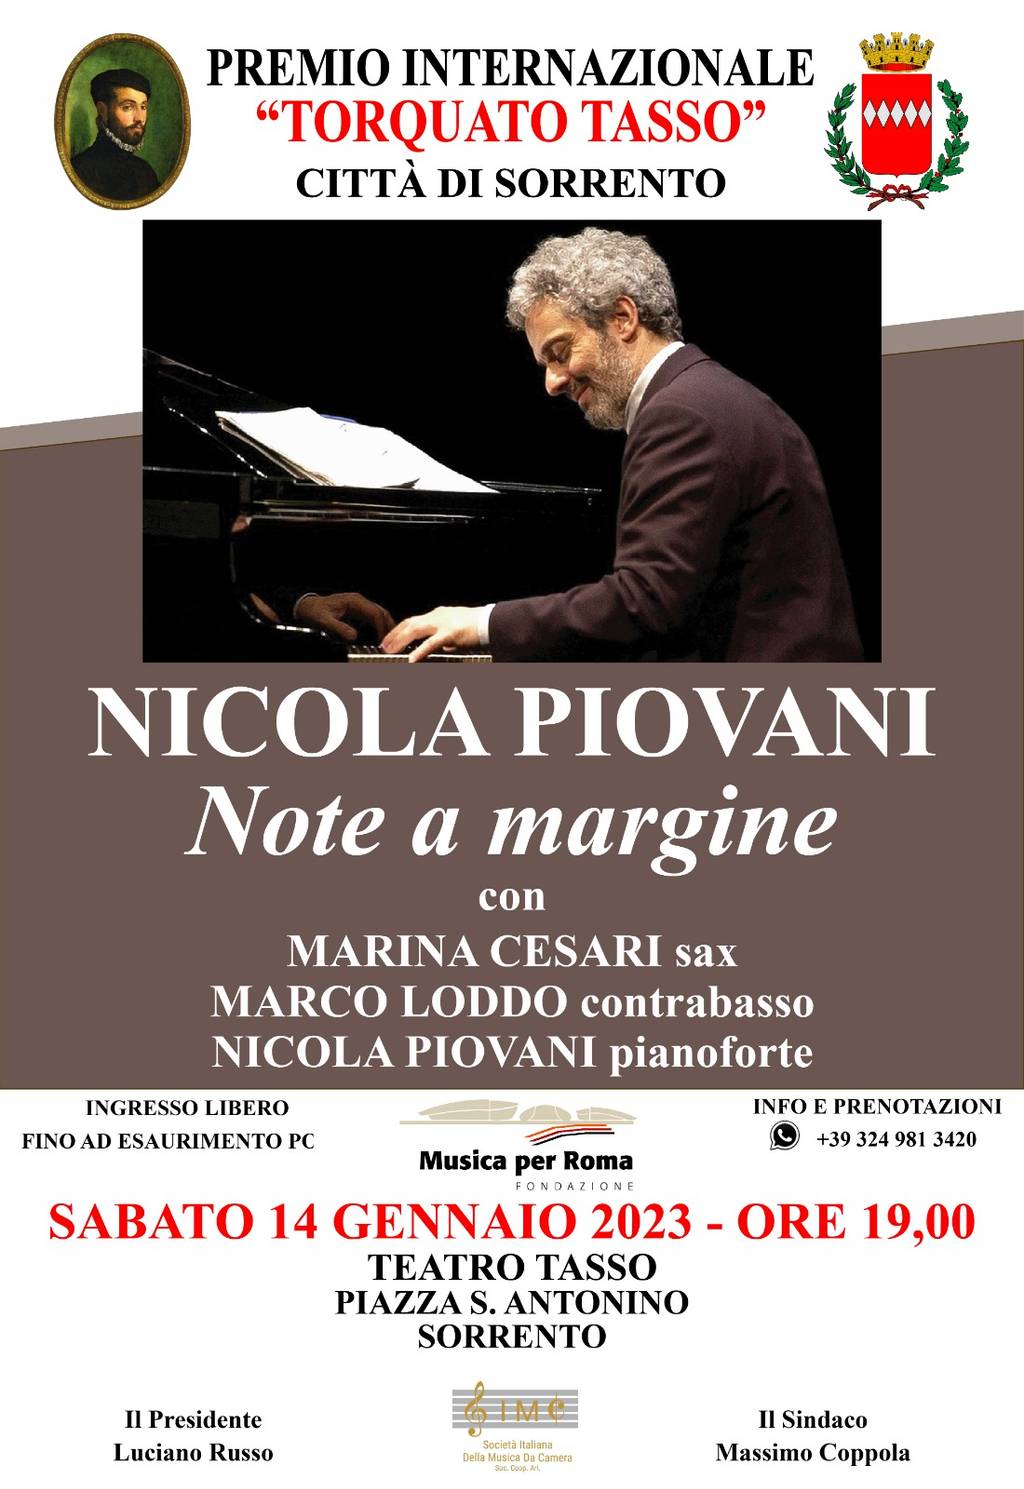 Nicola Piovani in concerto con "Note a margine"